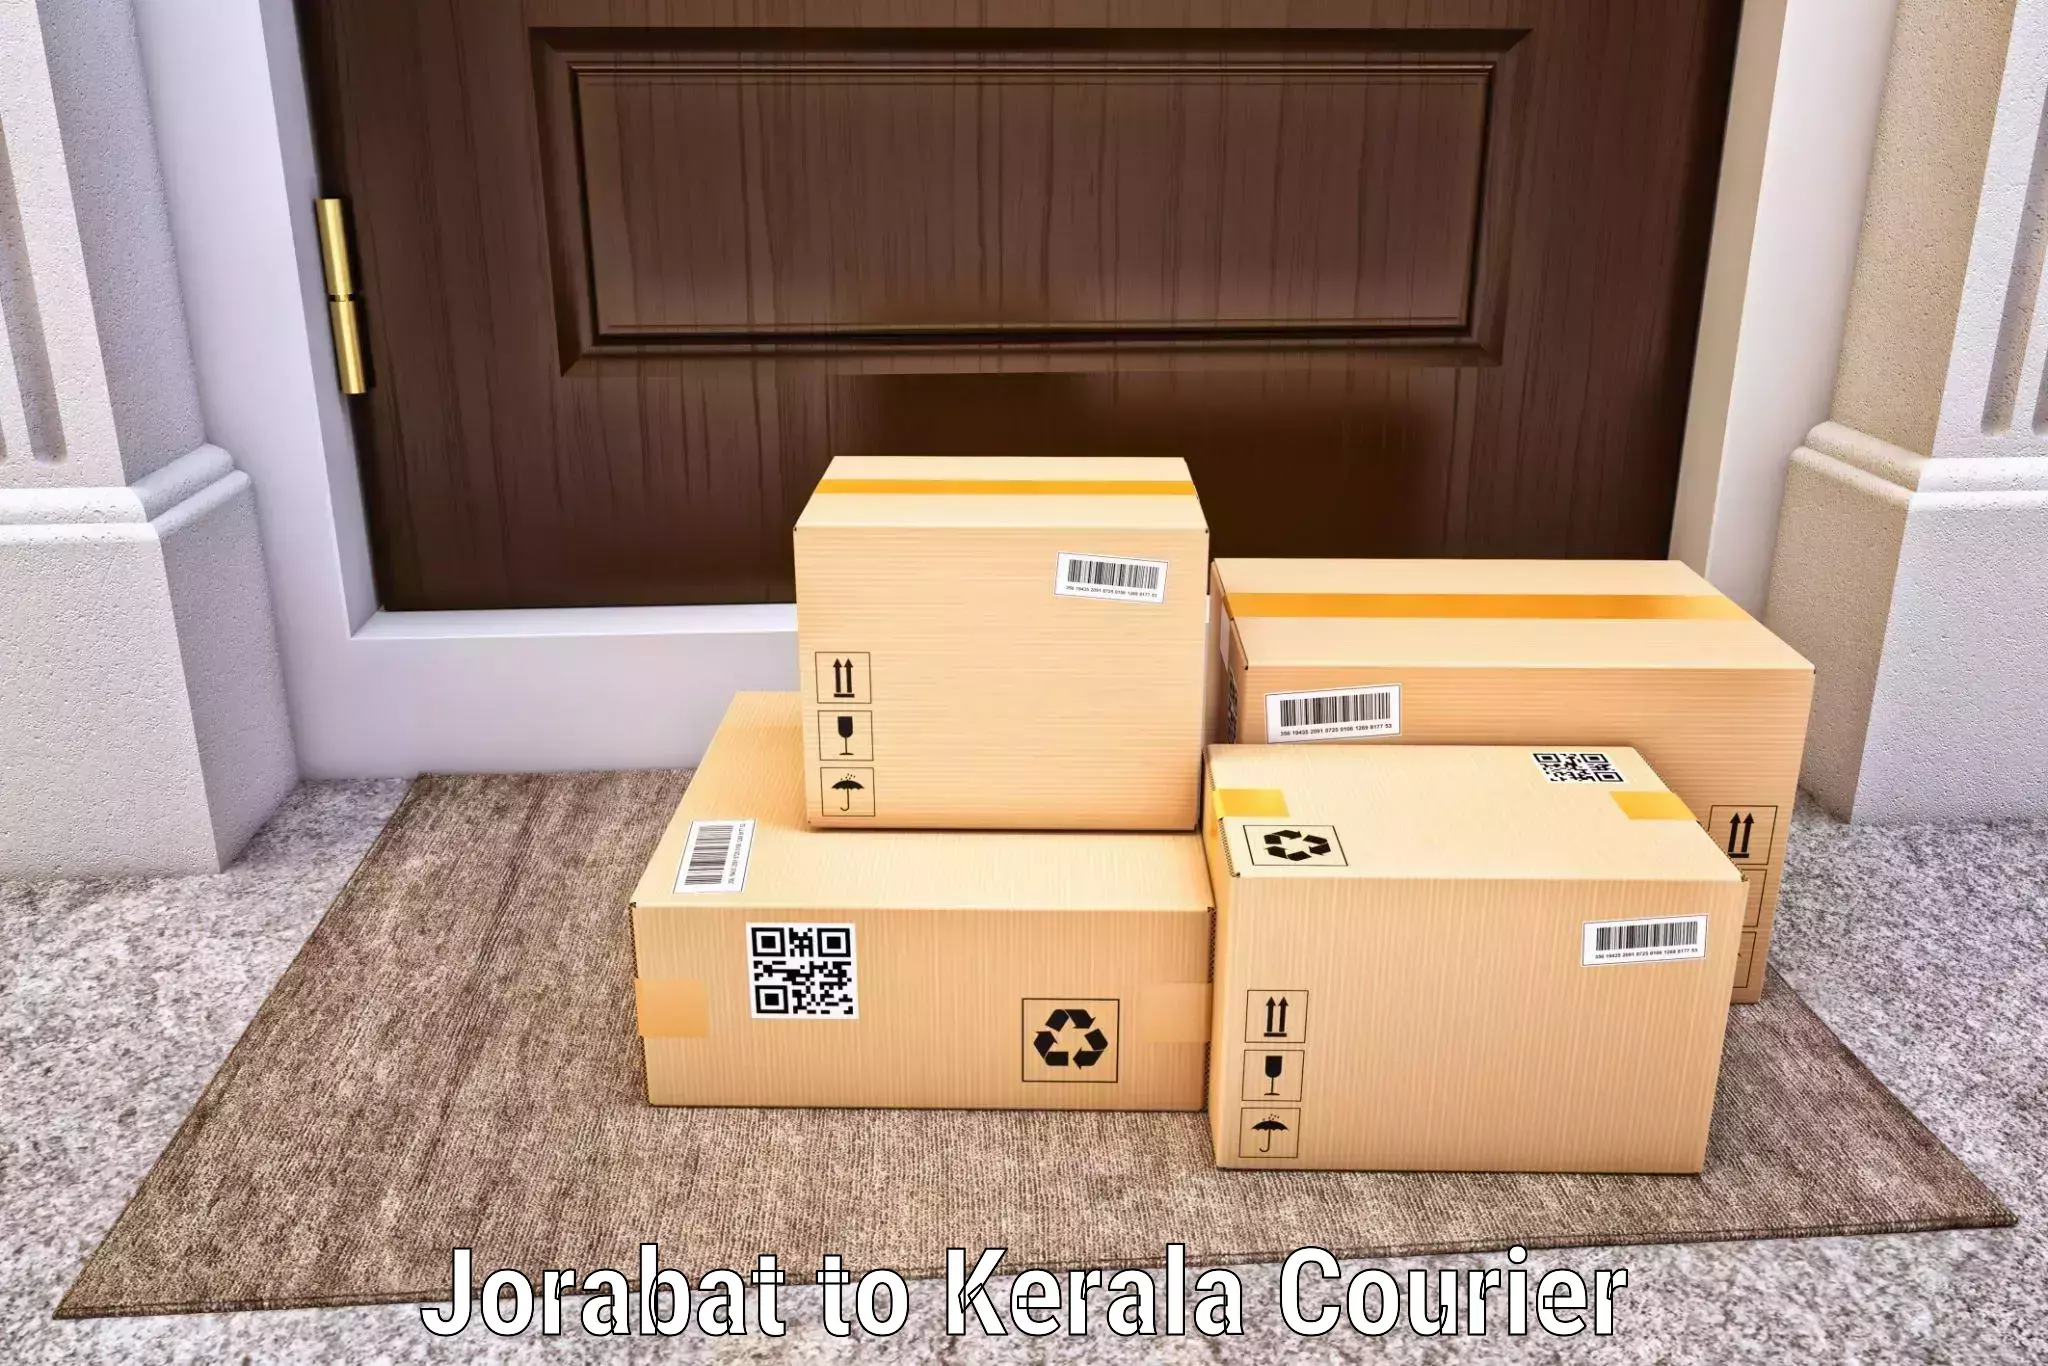 Express courier facilities Jorabat to Kayamkulam